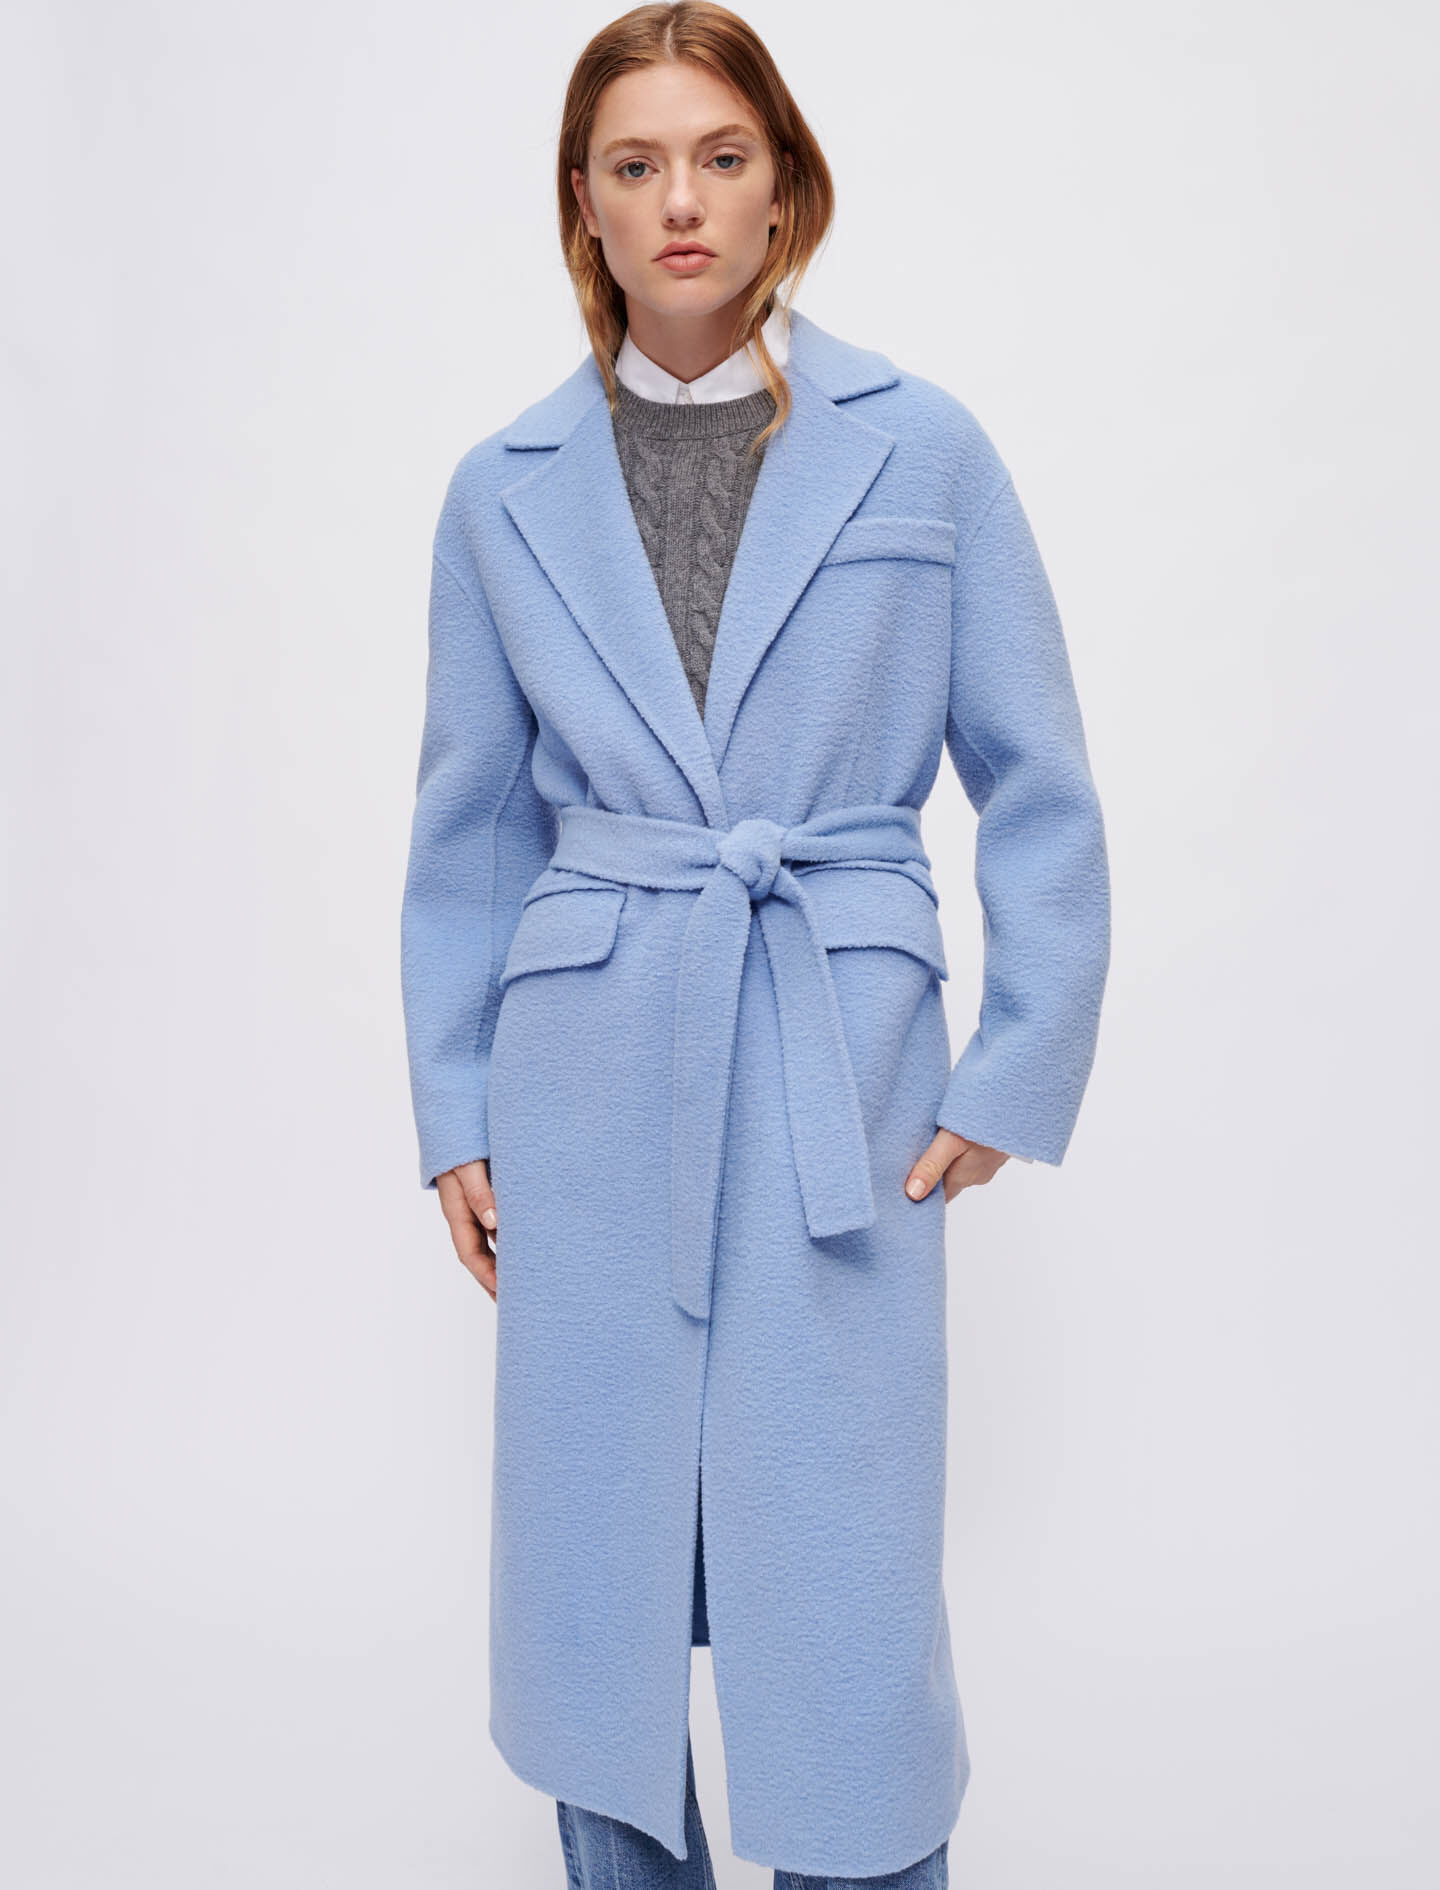 Mujer Ropa de Abrigos de Abrigos cortos Cocoon Coat Tartan Última Pieza YMC de Tejido sintético de color Azul 